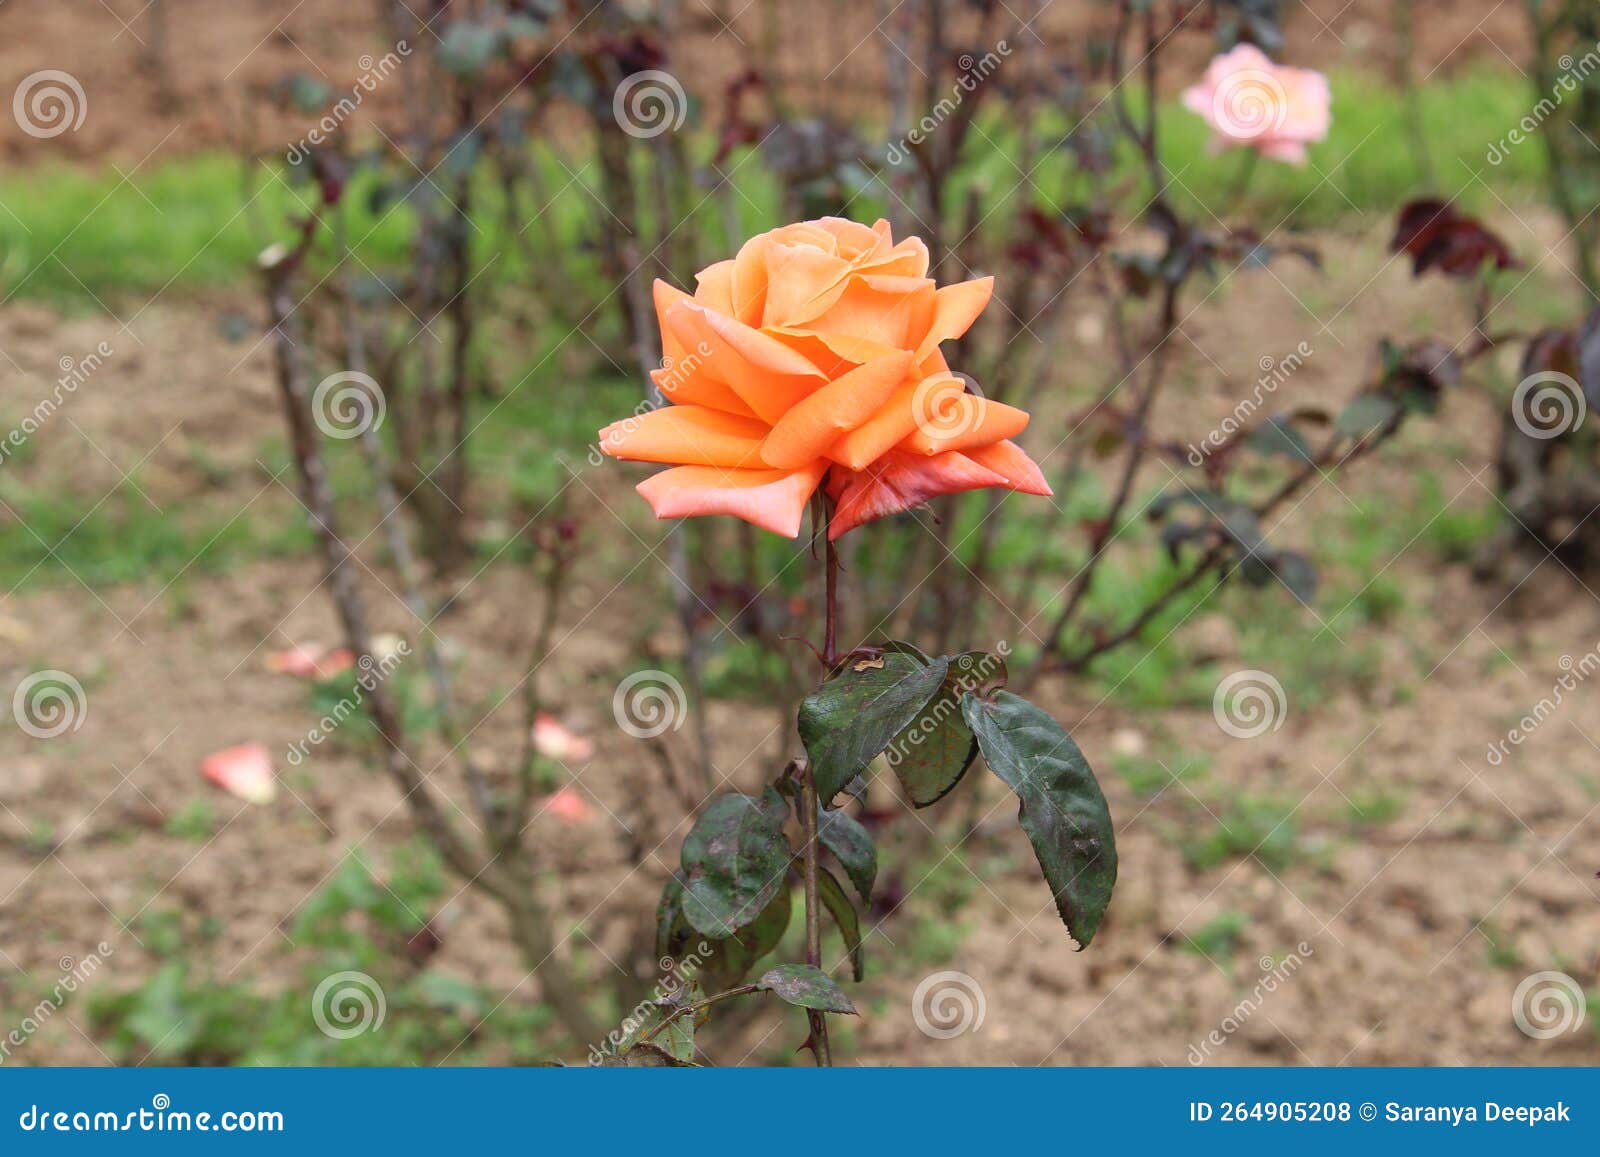 fanta colour rose plant